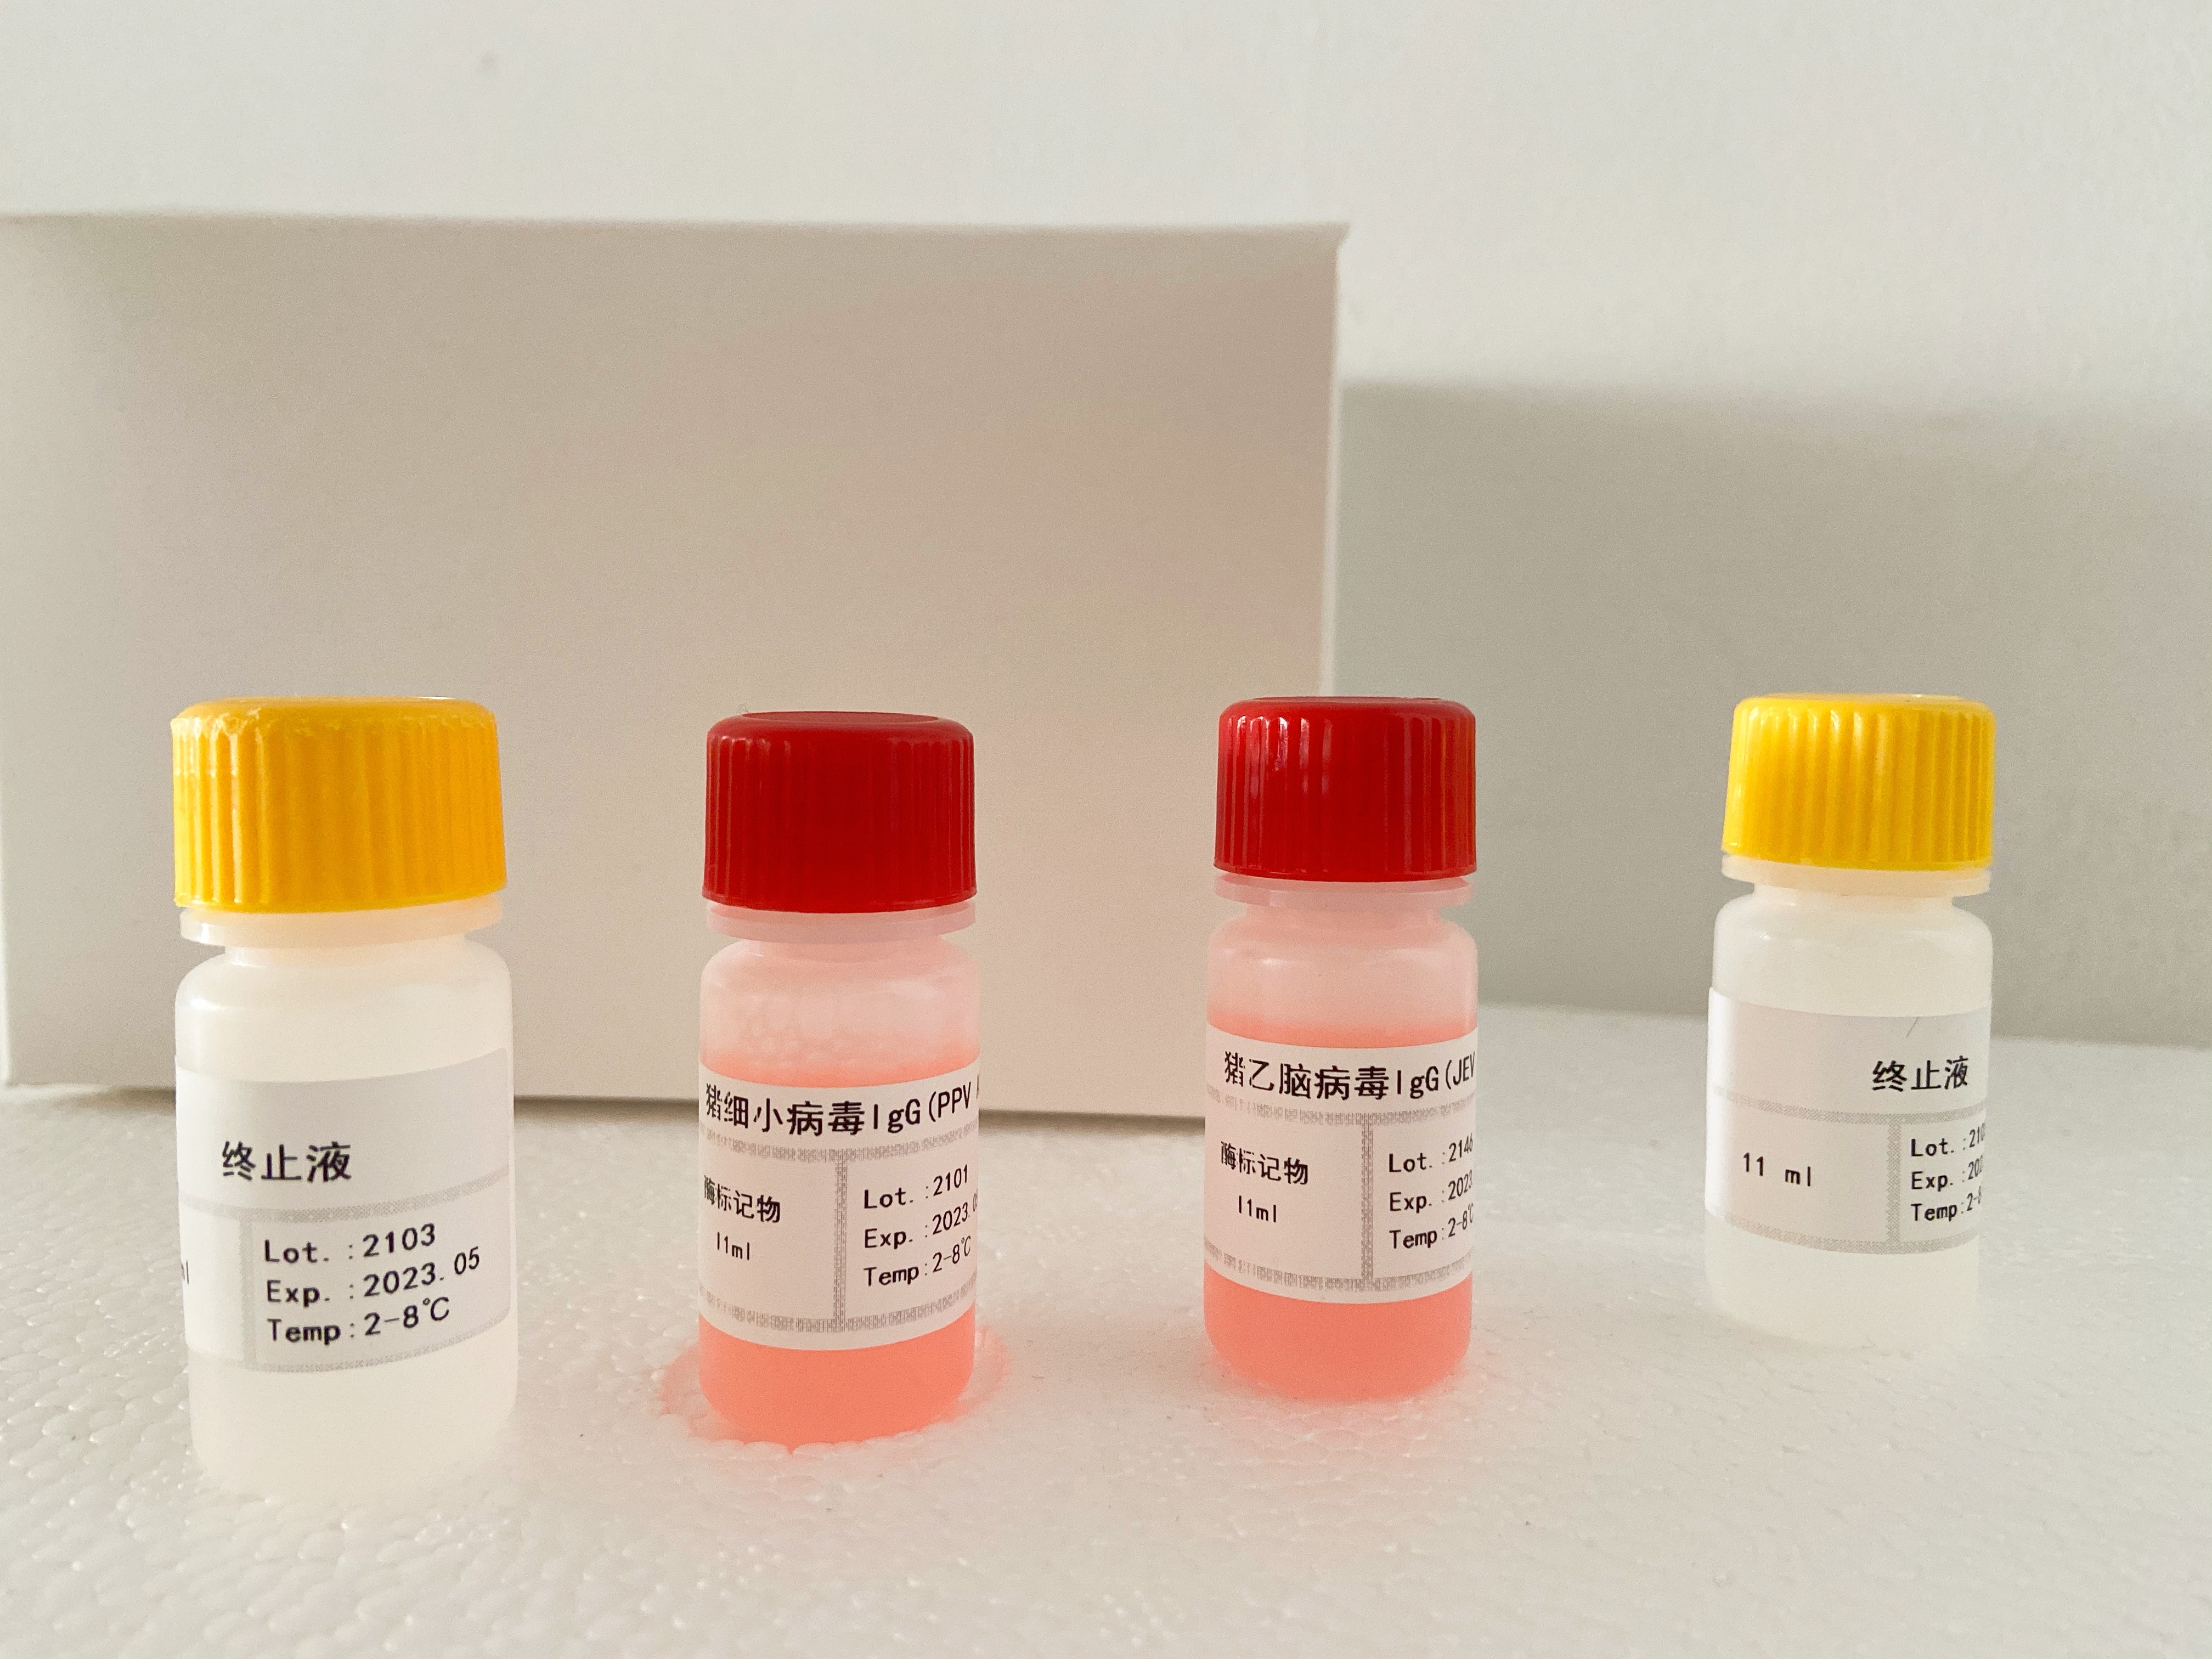 小鼠细小病毒(PV)抗体(IgG)检测试剂盒